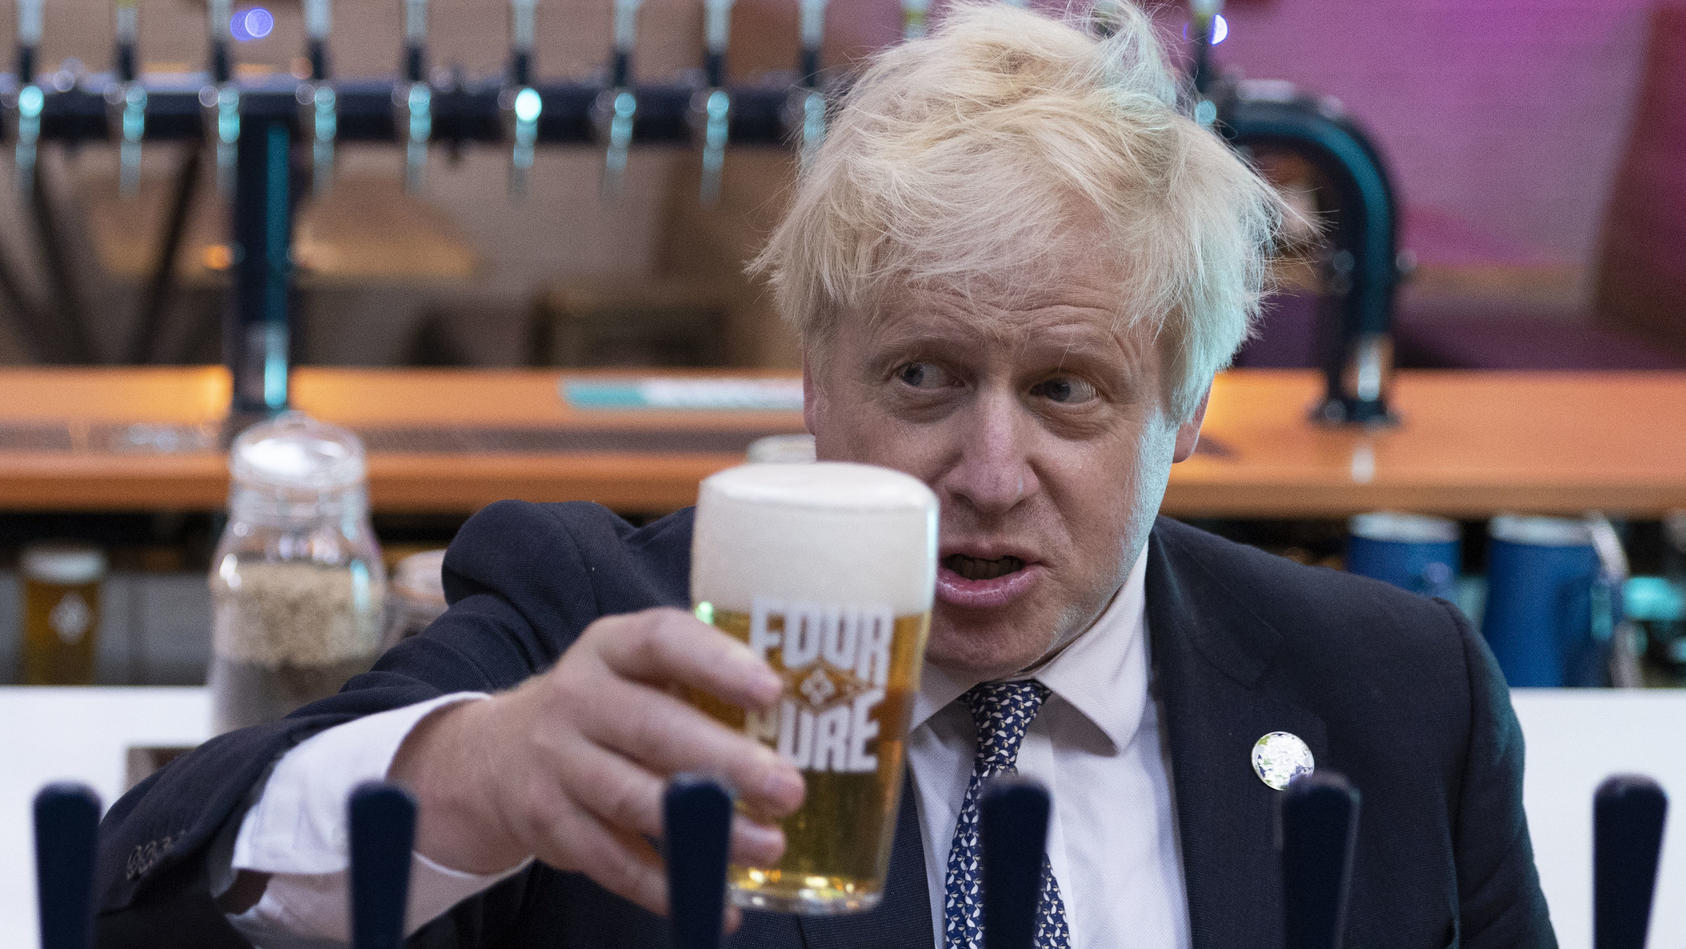 ARCHIV - 27.10.2021, Großbritannien, London: Boris Johnson, Premierminister von Großbritannien, hält bei einem Besuch in der Fourpure-Brauerei ein Bier in der Hand. Zum Feierabend auf zwei Pints in den Pub, das ist in Großbritannien seit langem für v